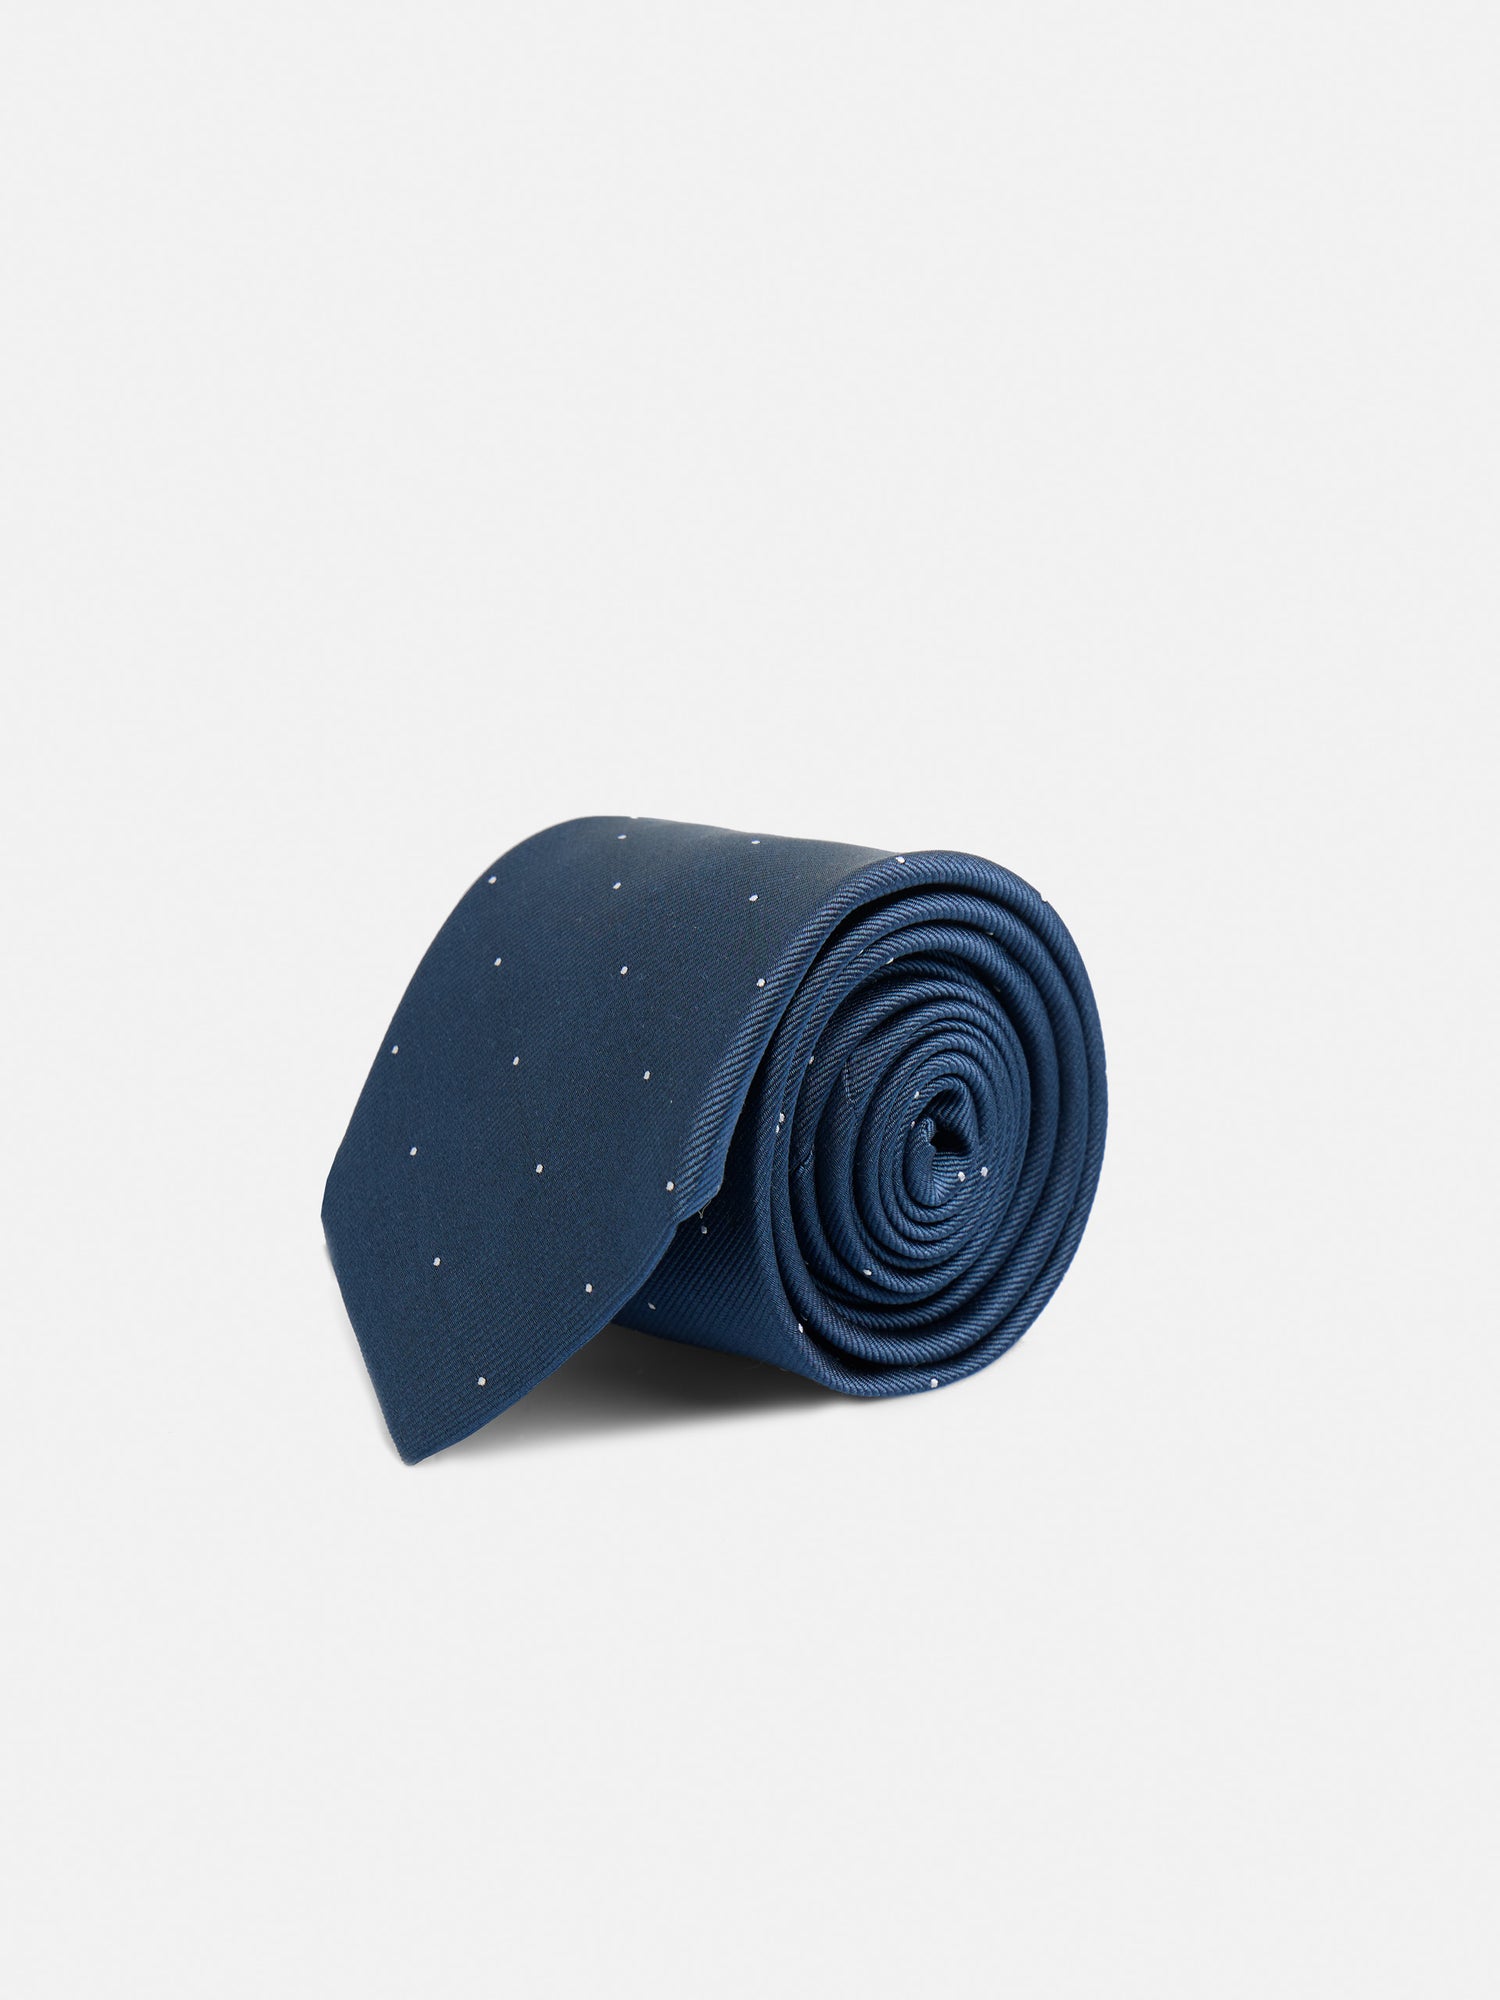 Cravate Silbon mini pois bleu marine